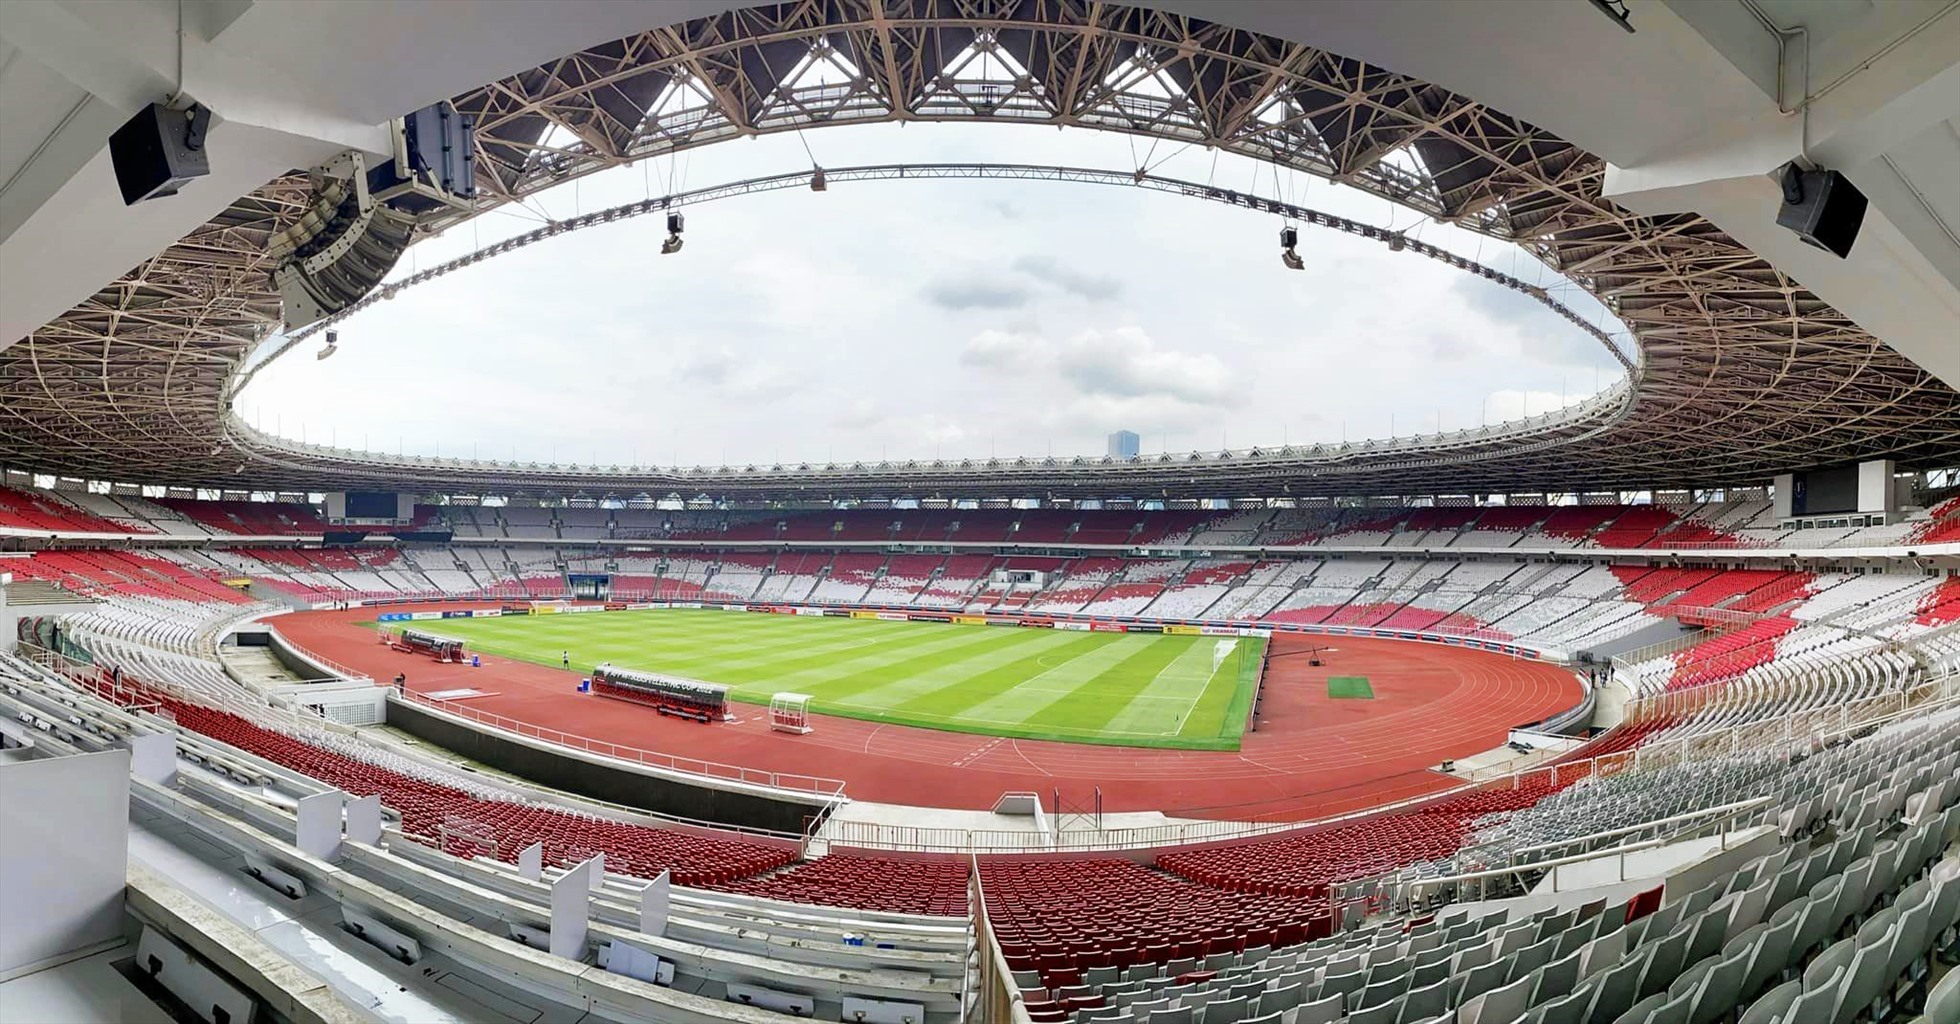 Sân Bung Karno đón 50.000 khán giả trận tuyển Indonesia - Việt Nam